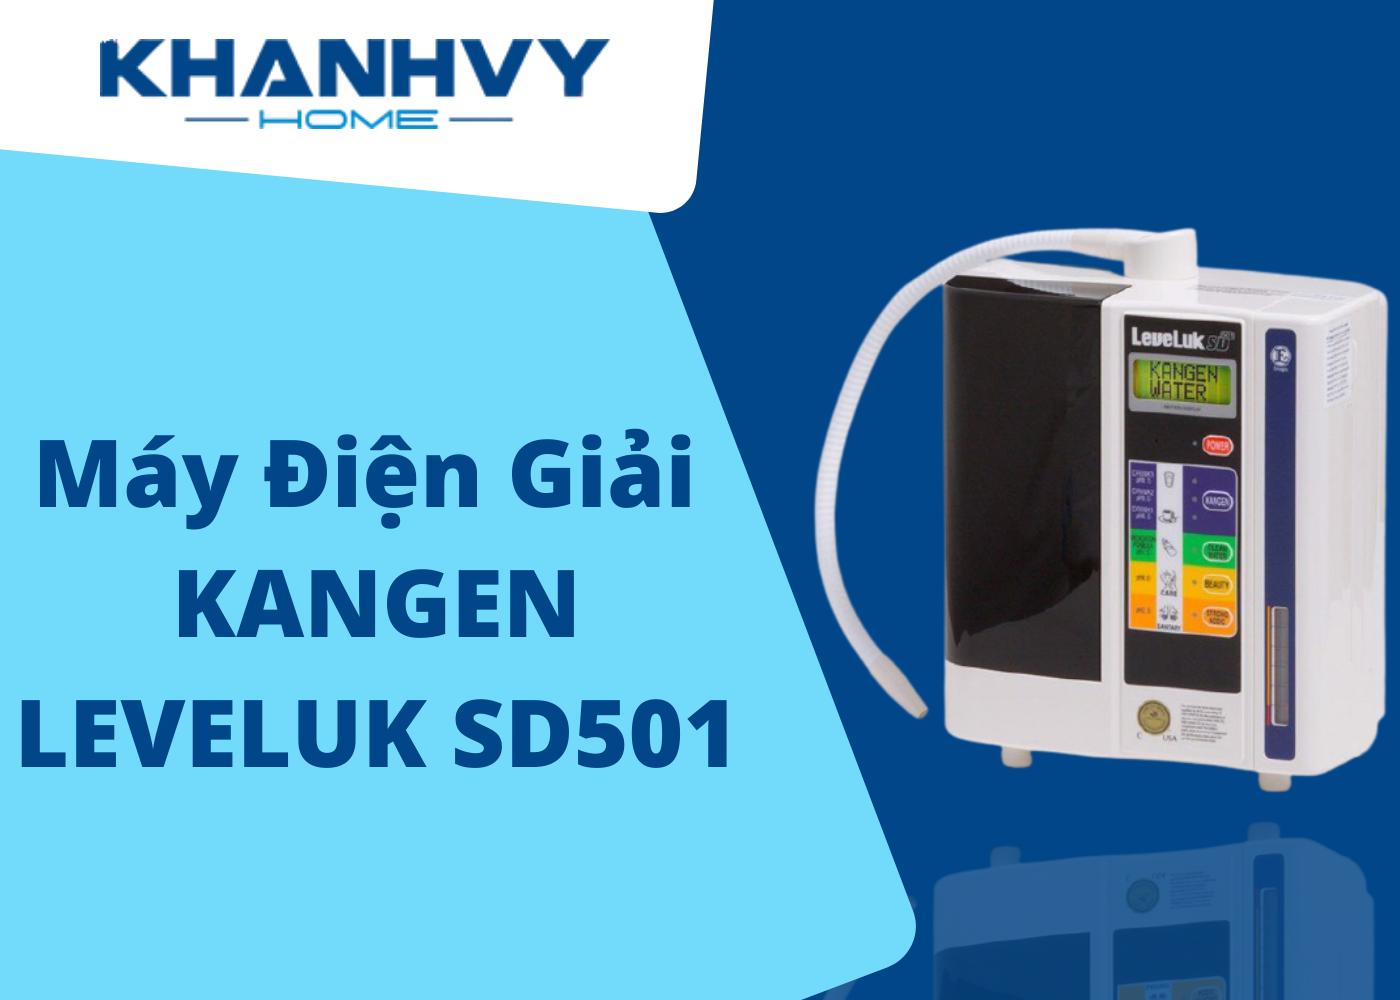 Máy điện giải Kangen Leveluk SD501 sở hữu công nghệ mới nhất